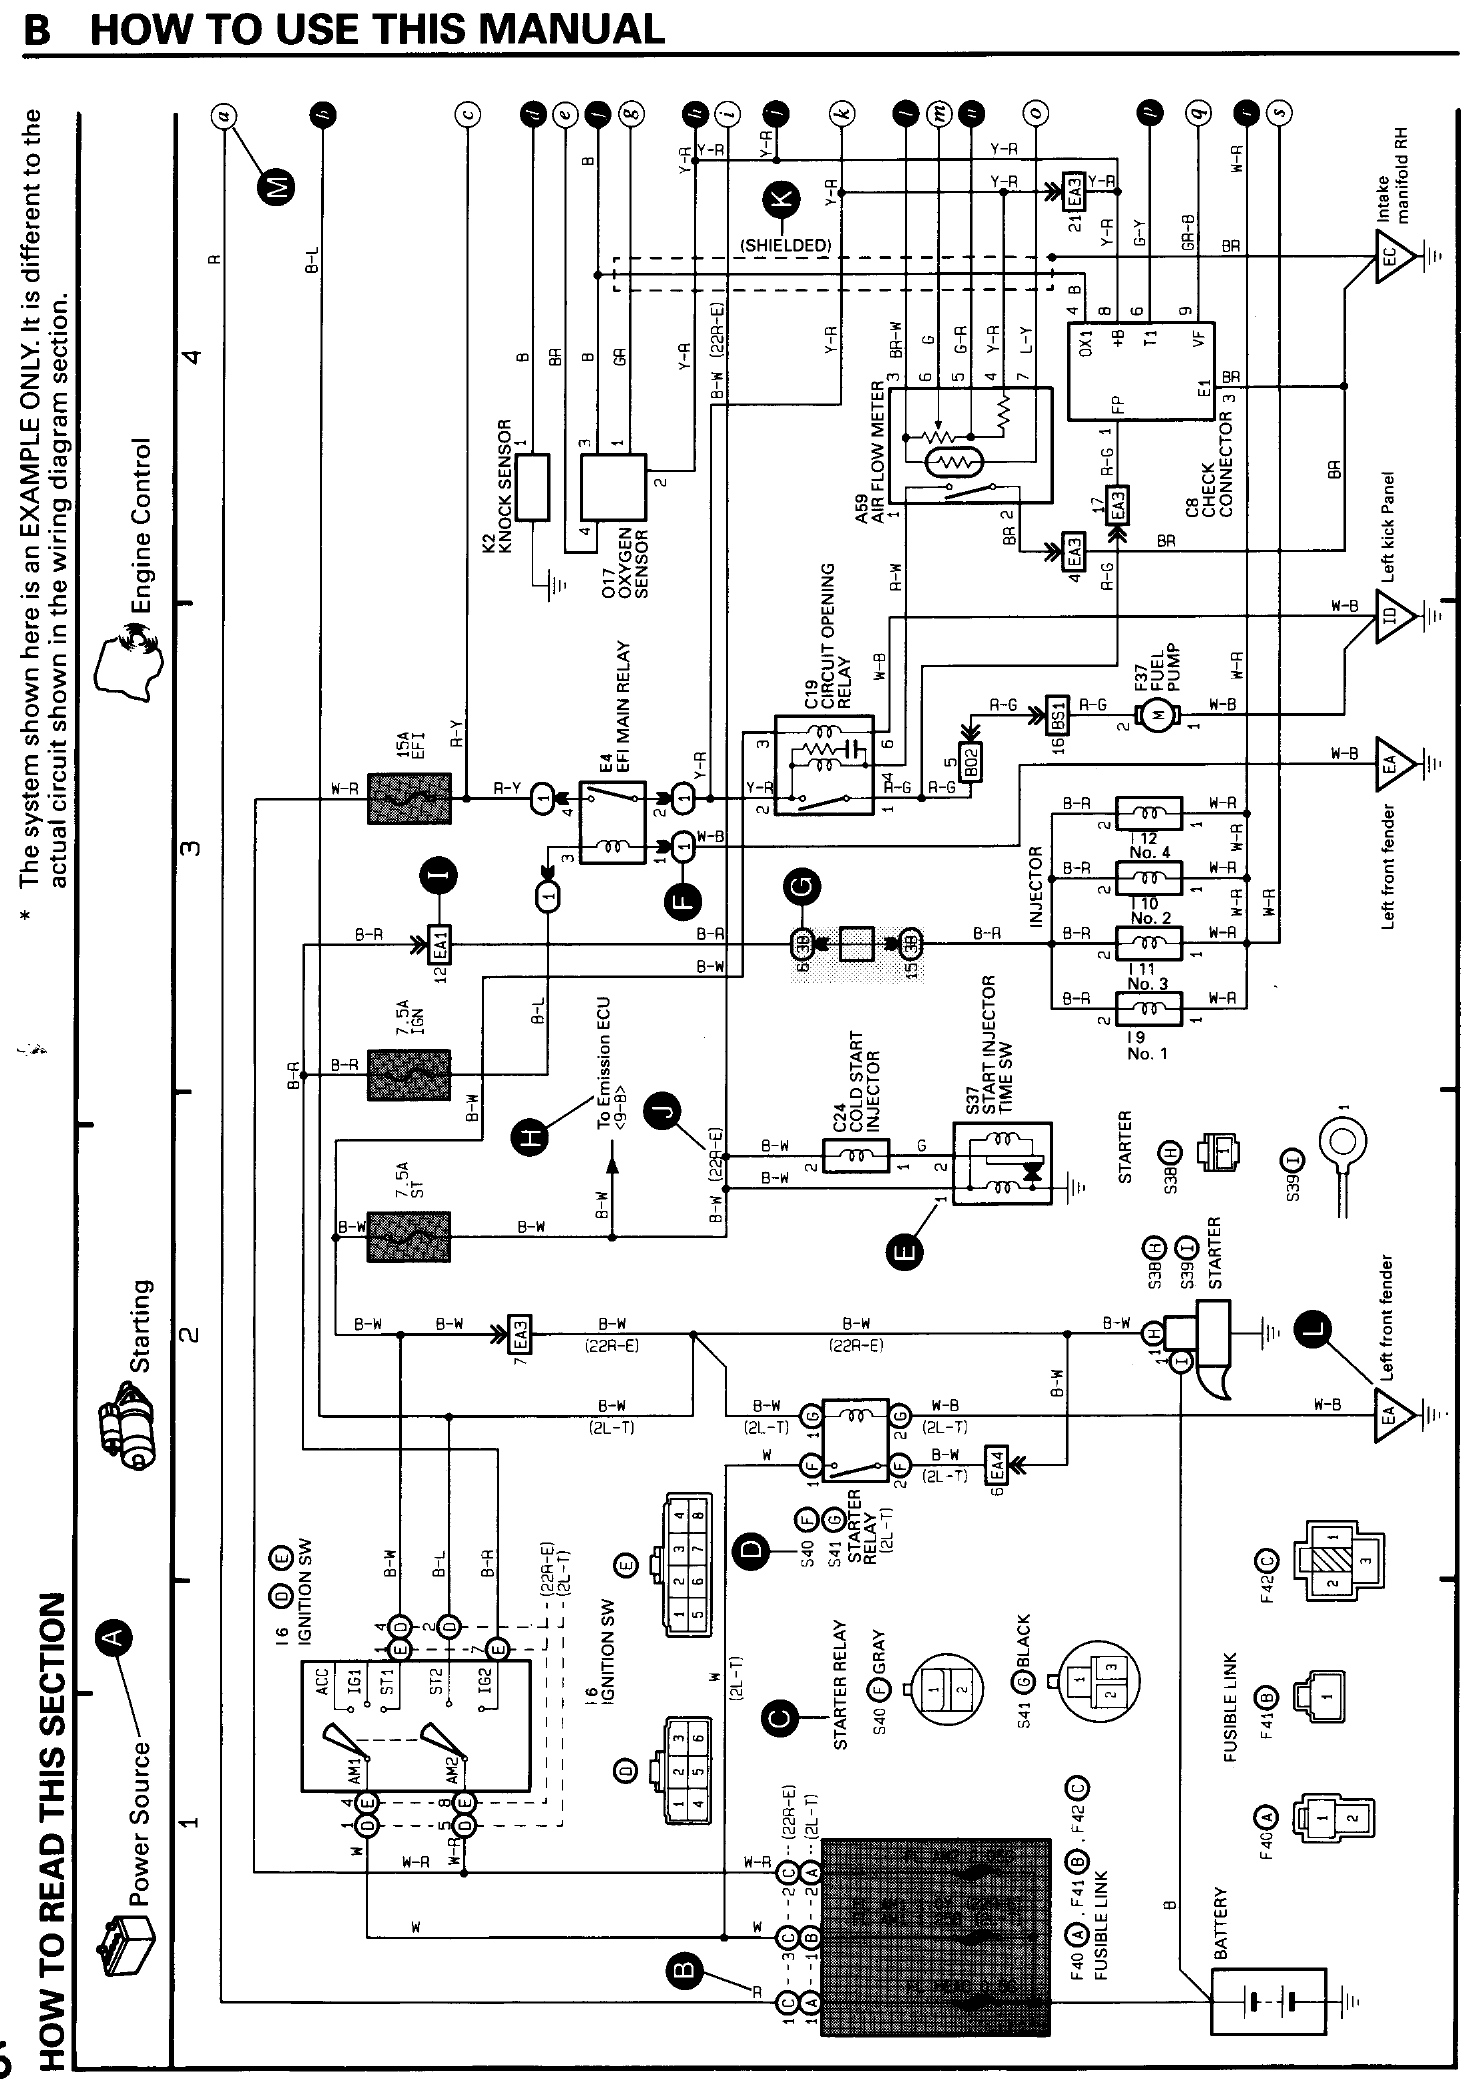 2000丰田camry电路图 英.pdf-第3页.png